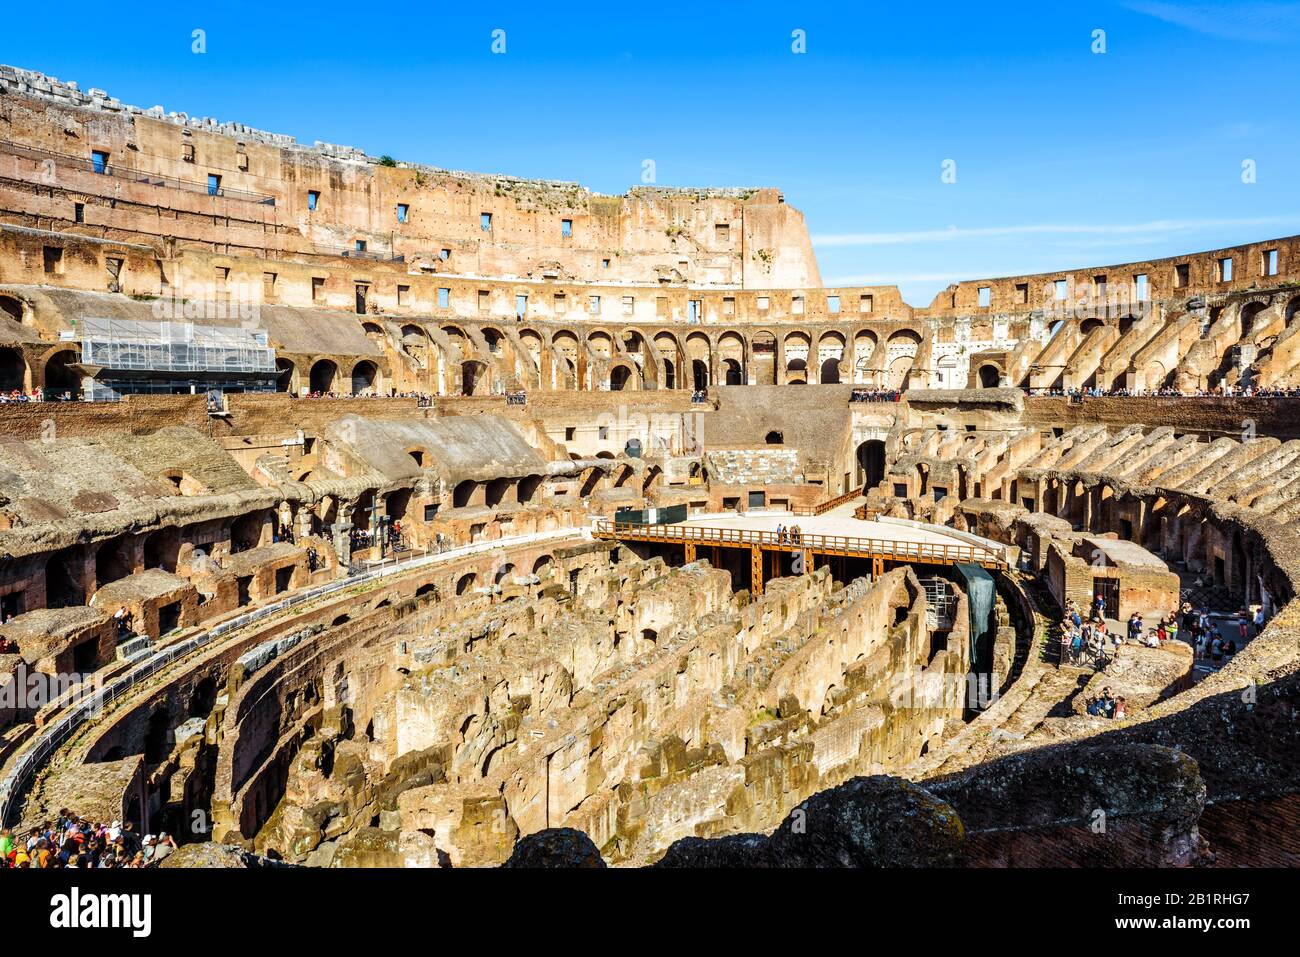 Colisée À L'Intérieur, Rome, Italie. Le célèbre Colisée est un point de repère de Rome. Panorama de l'arène du Colisée en été. Vestiges De L'Ancien Emp romain Banque D'Images